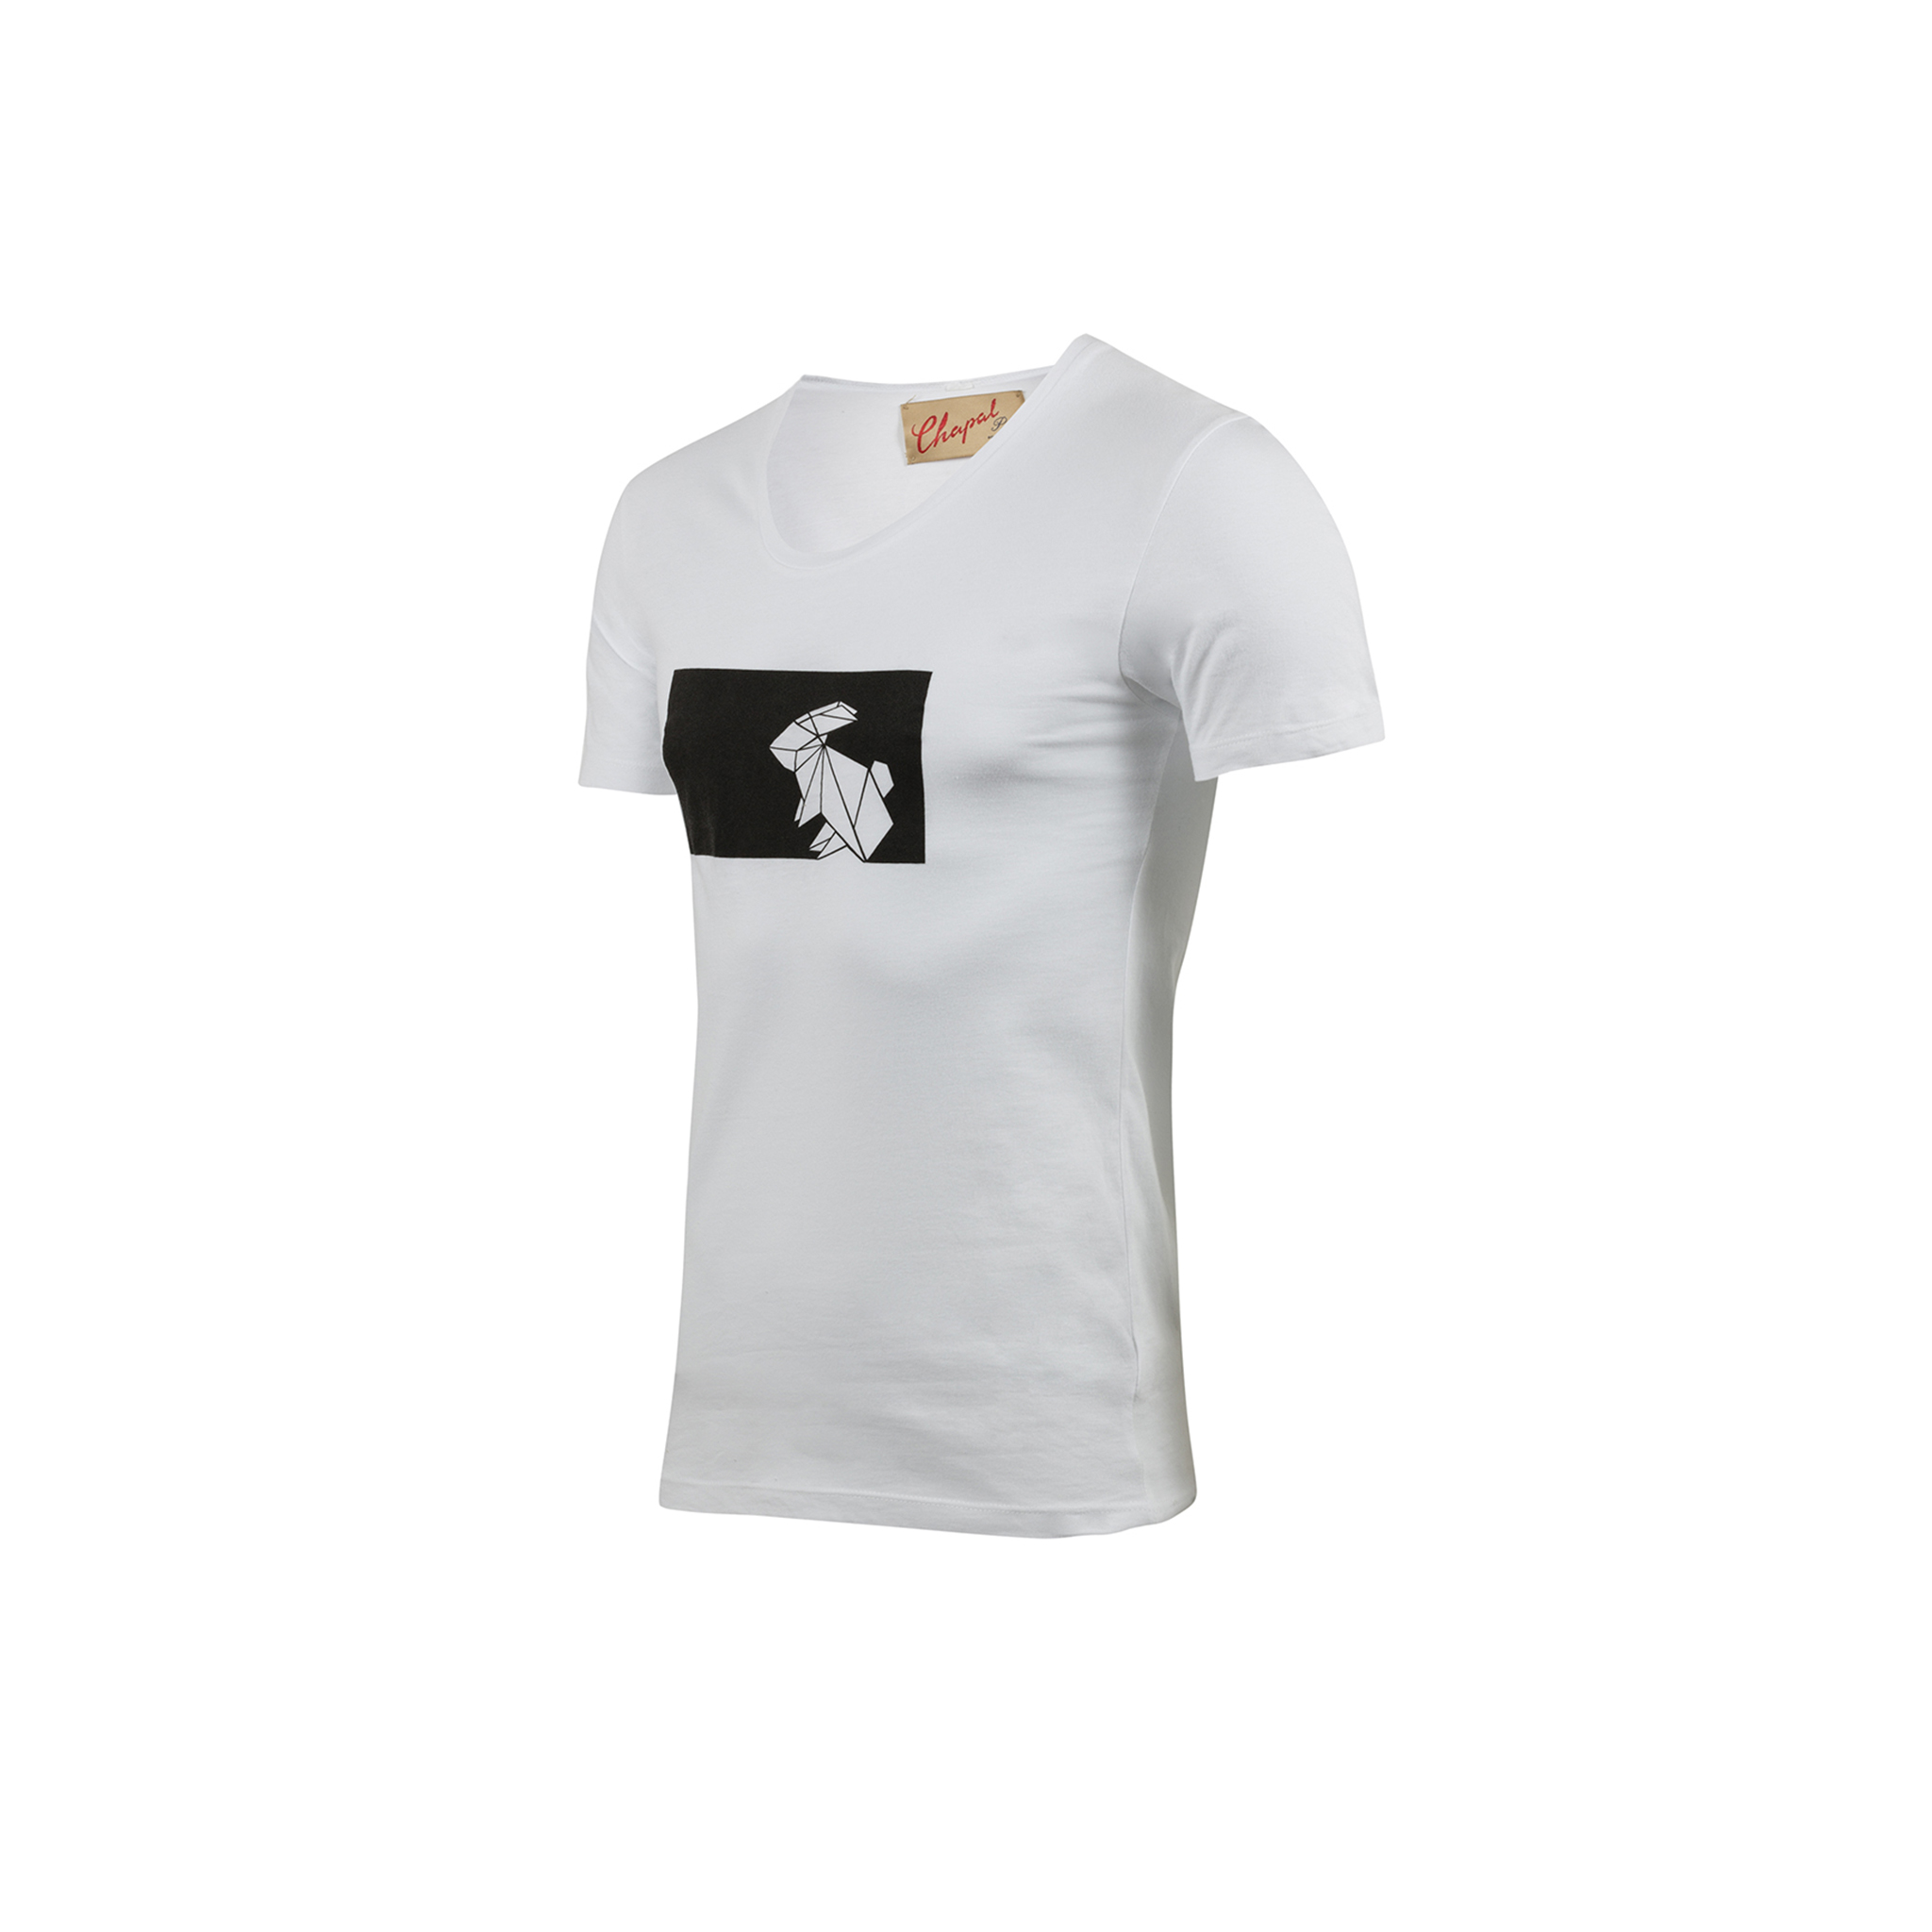 T-shirt Origami - Jersey de coton - Couleur blanc